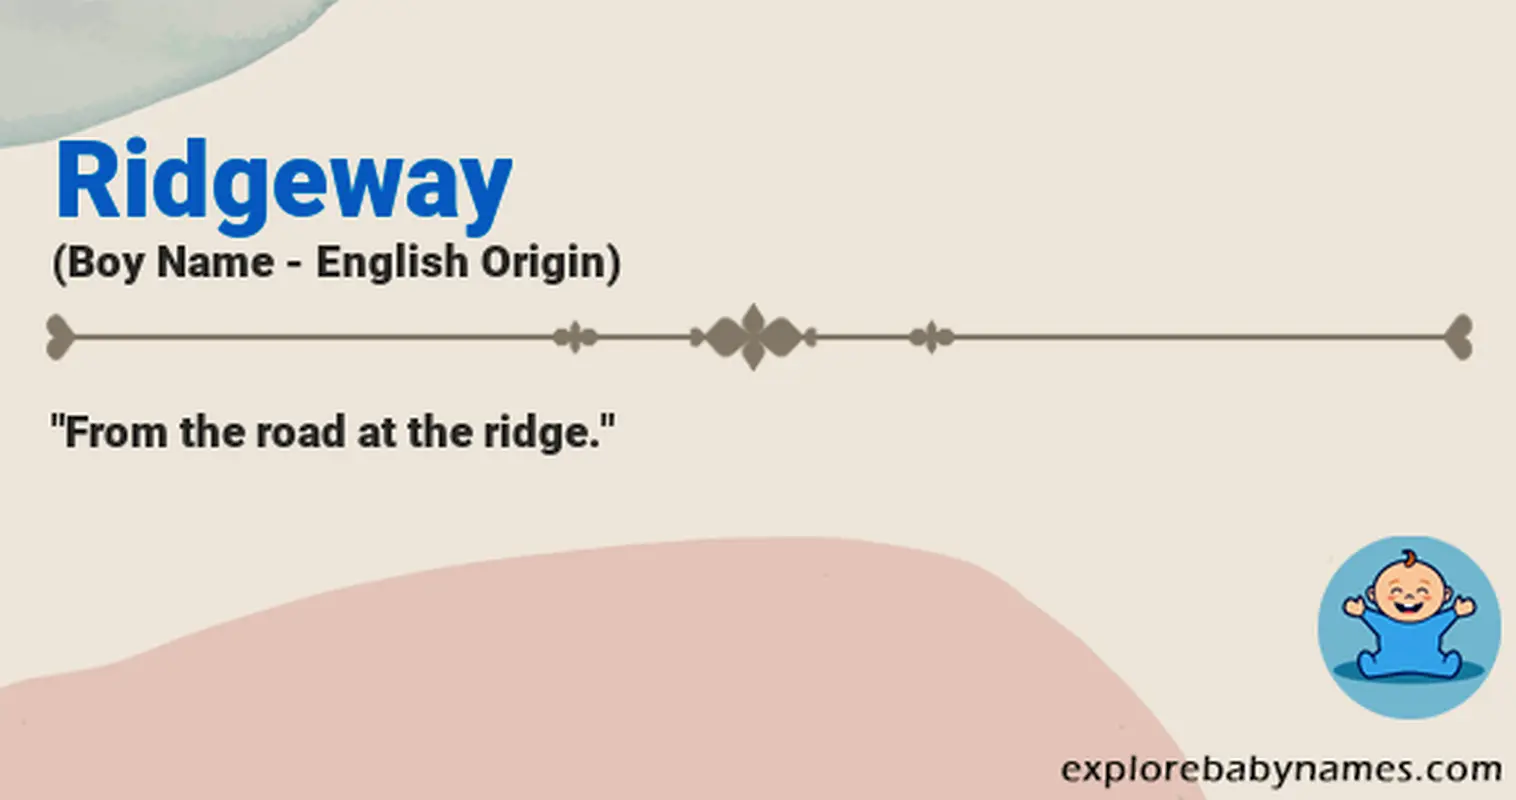 Meaning of Ridgeway